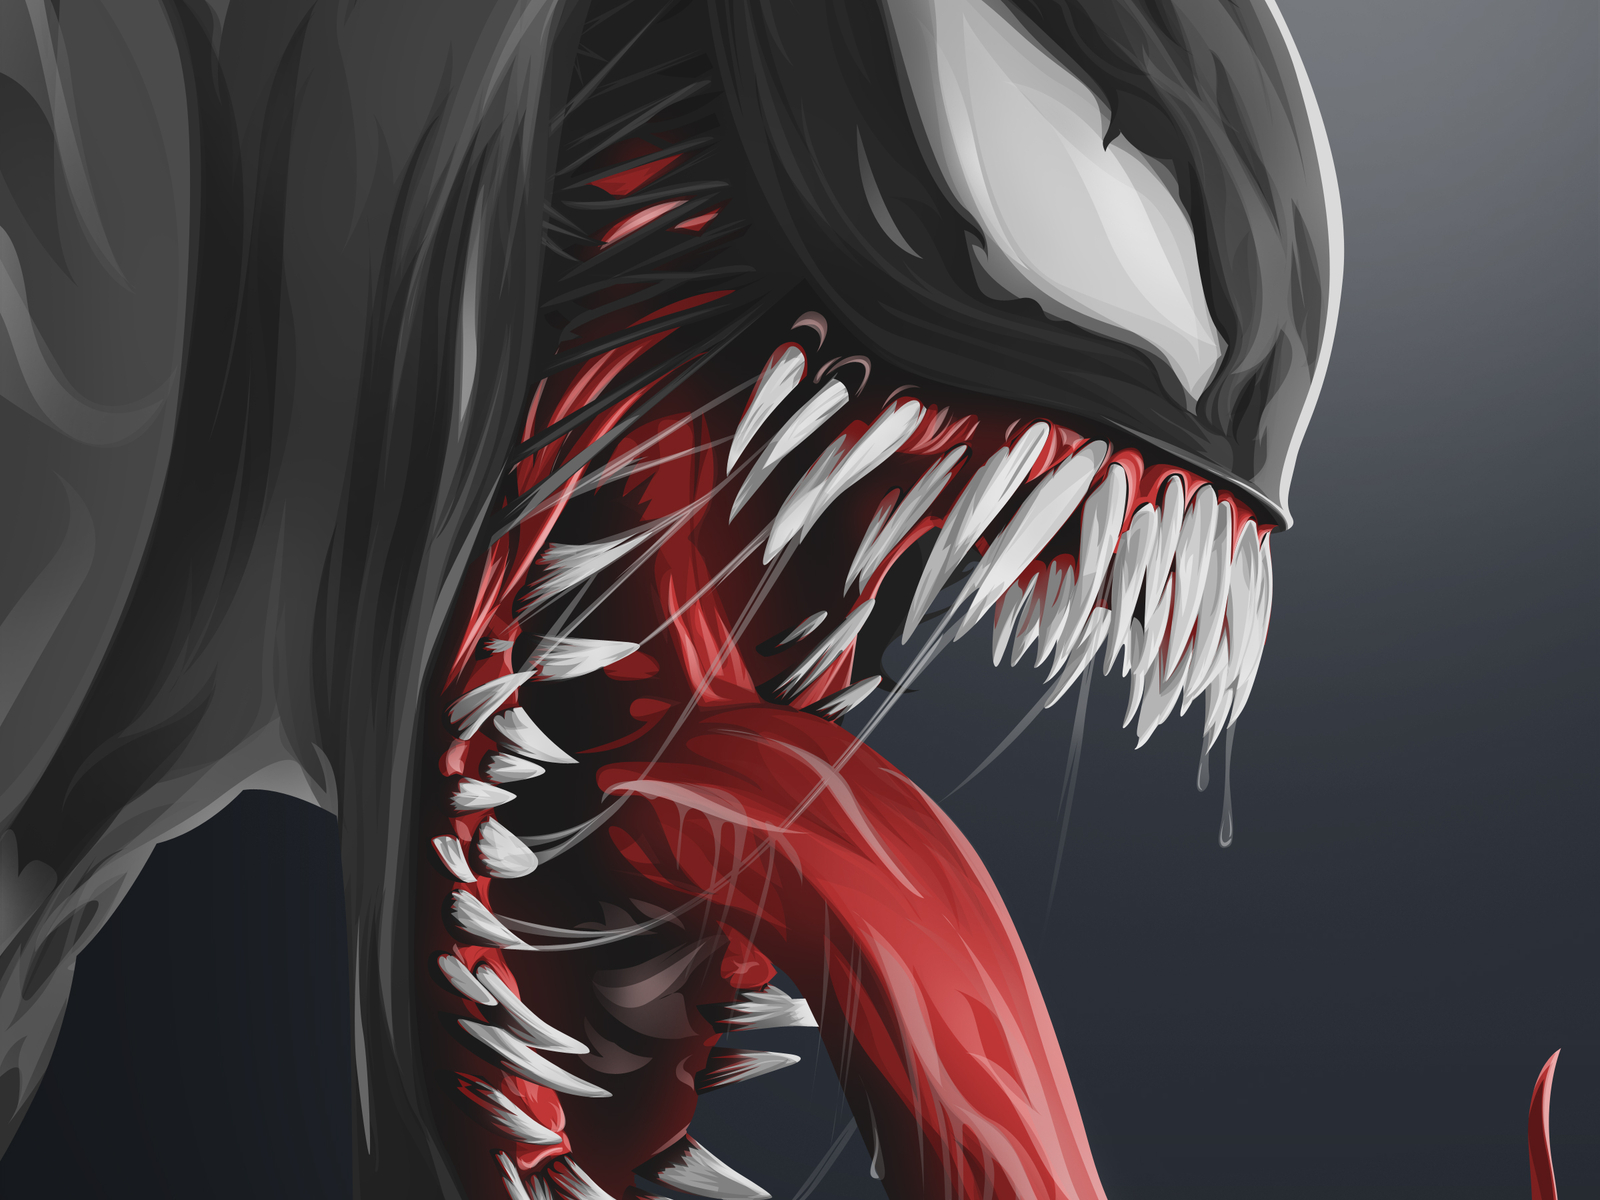 Venom by flushdesign on Dribbble